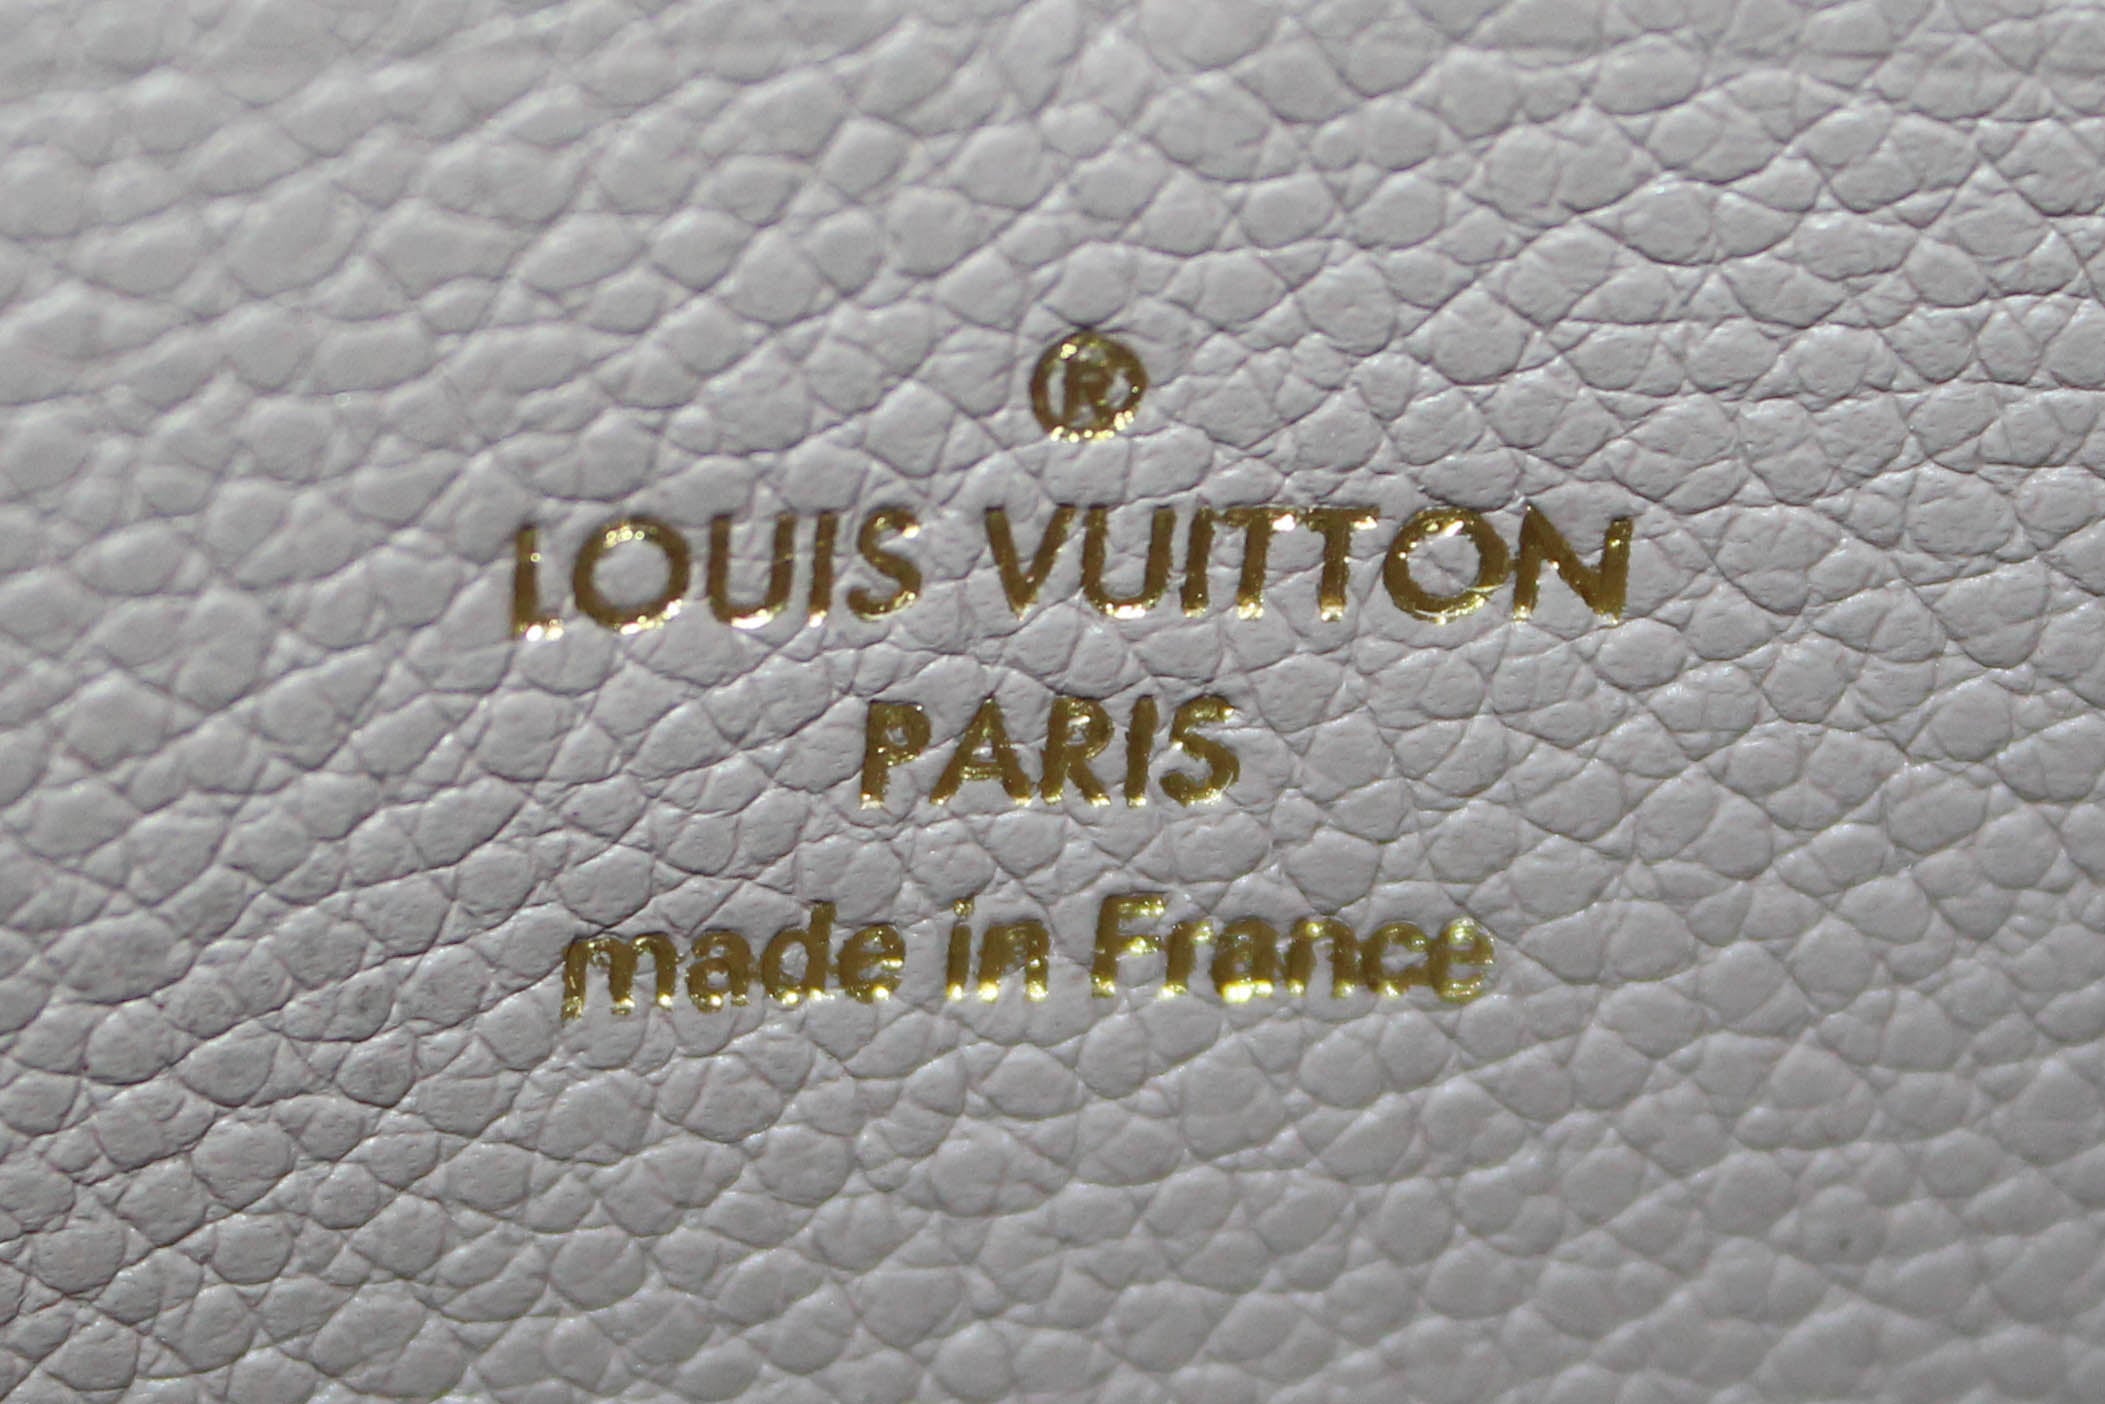 Authentic Louis Vuitton Mastic Monogram Empreinte Leather Zippy Wallet